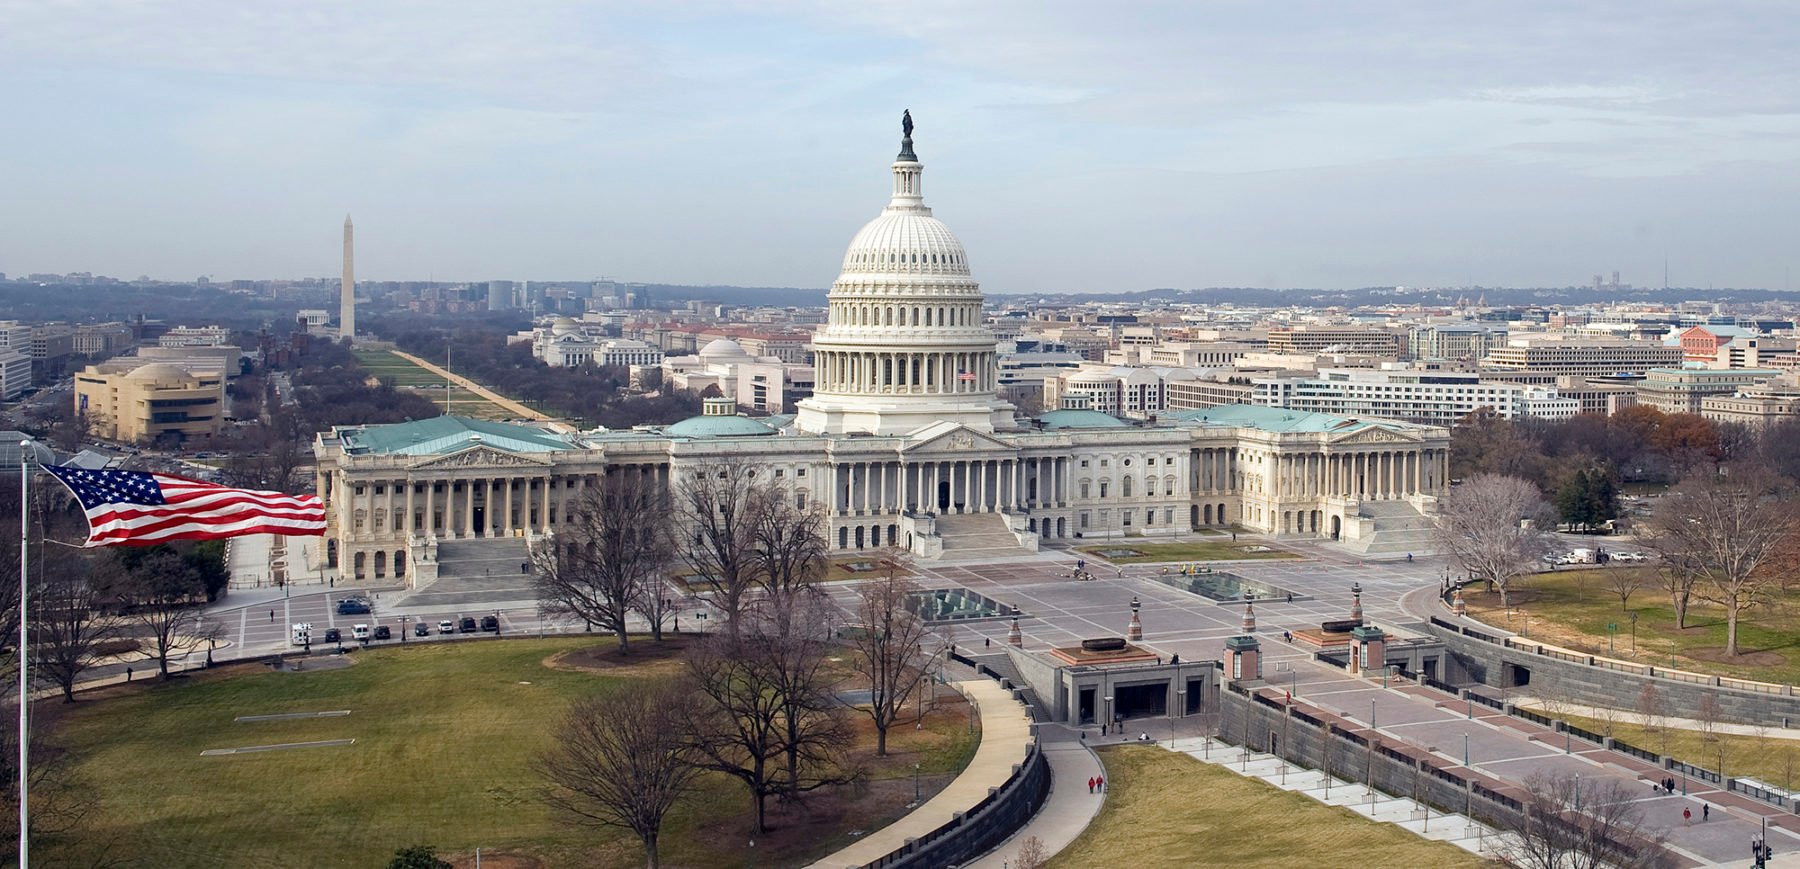 Ковид в сша. Вашингтон конгресс Капитолий. Капитолийский холм в Вашингтоне. Конгресс США, Капитолий, Вашингтон. Капитолий здание конгресса США.